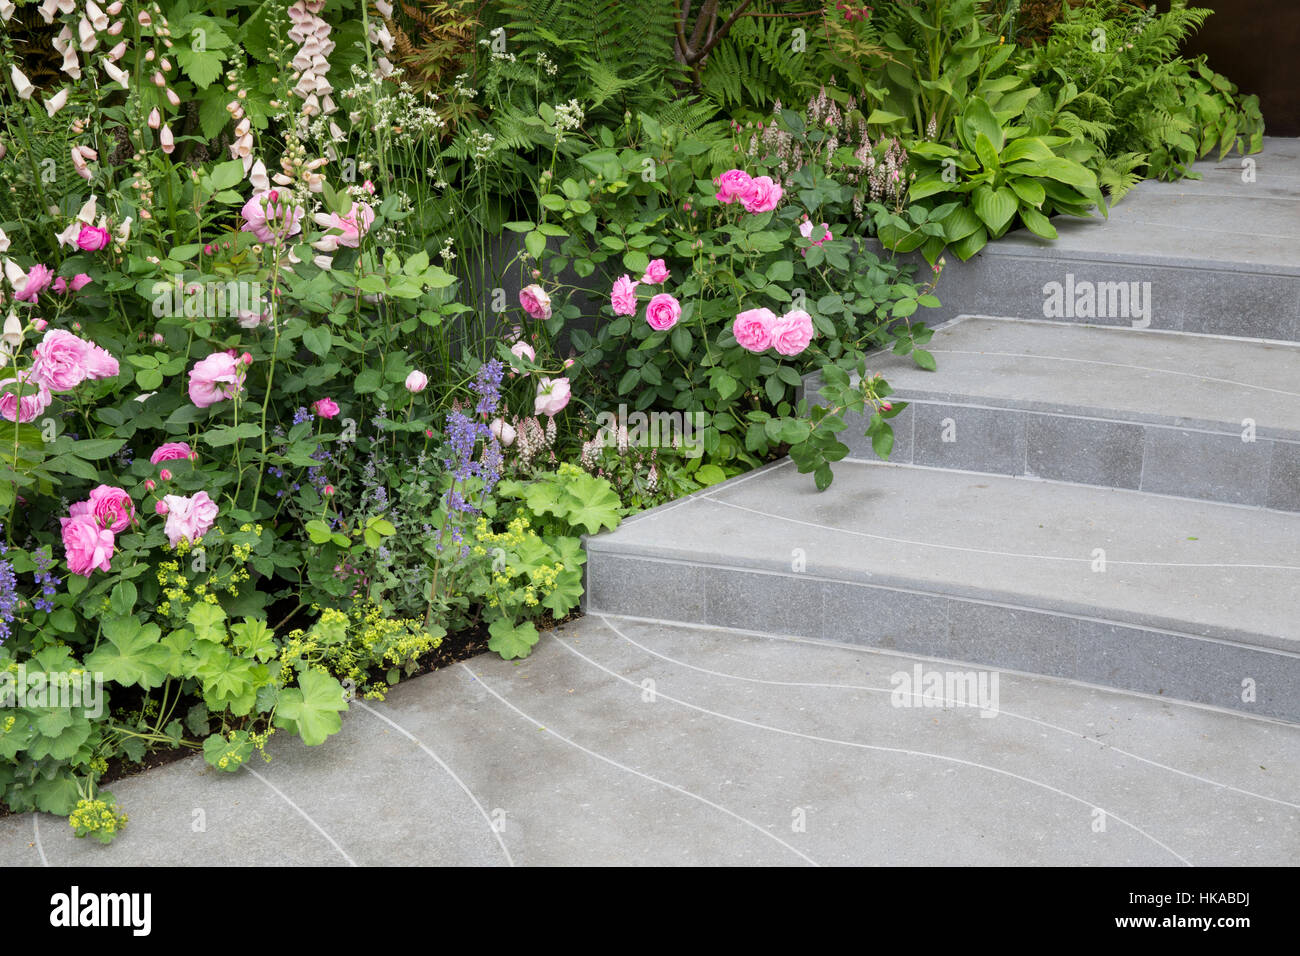 Royaume-Uni UN jardin de maison avec des marches en pierre avec la frontière de roses anglaises - bordures roses - Rose Louise Odier - Digitalis purpurea Apricot de Sutton - Hosta Devon Green Banque D'Images